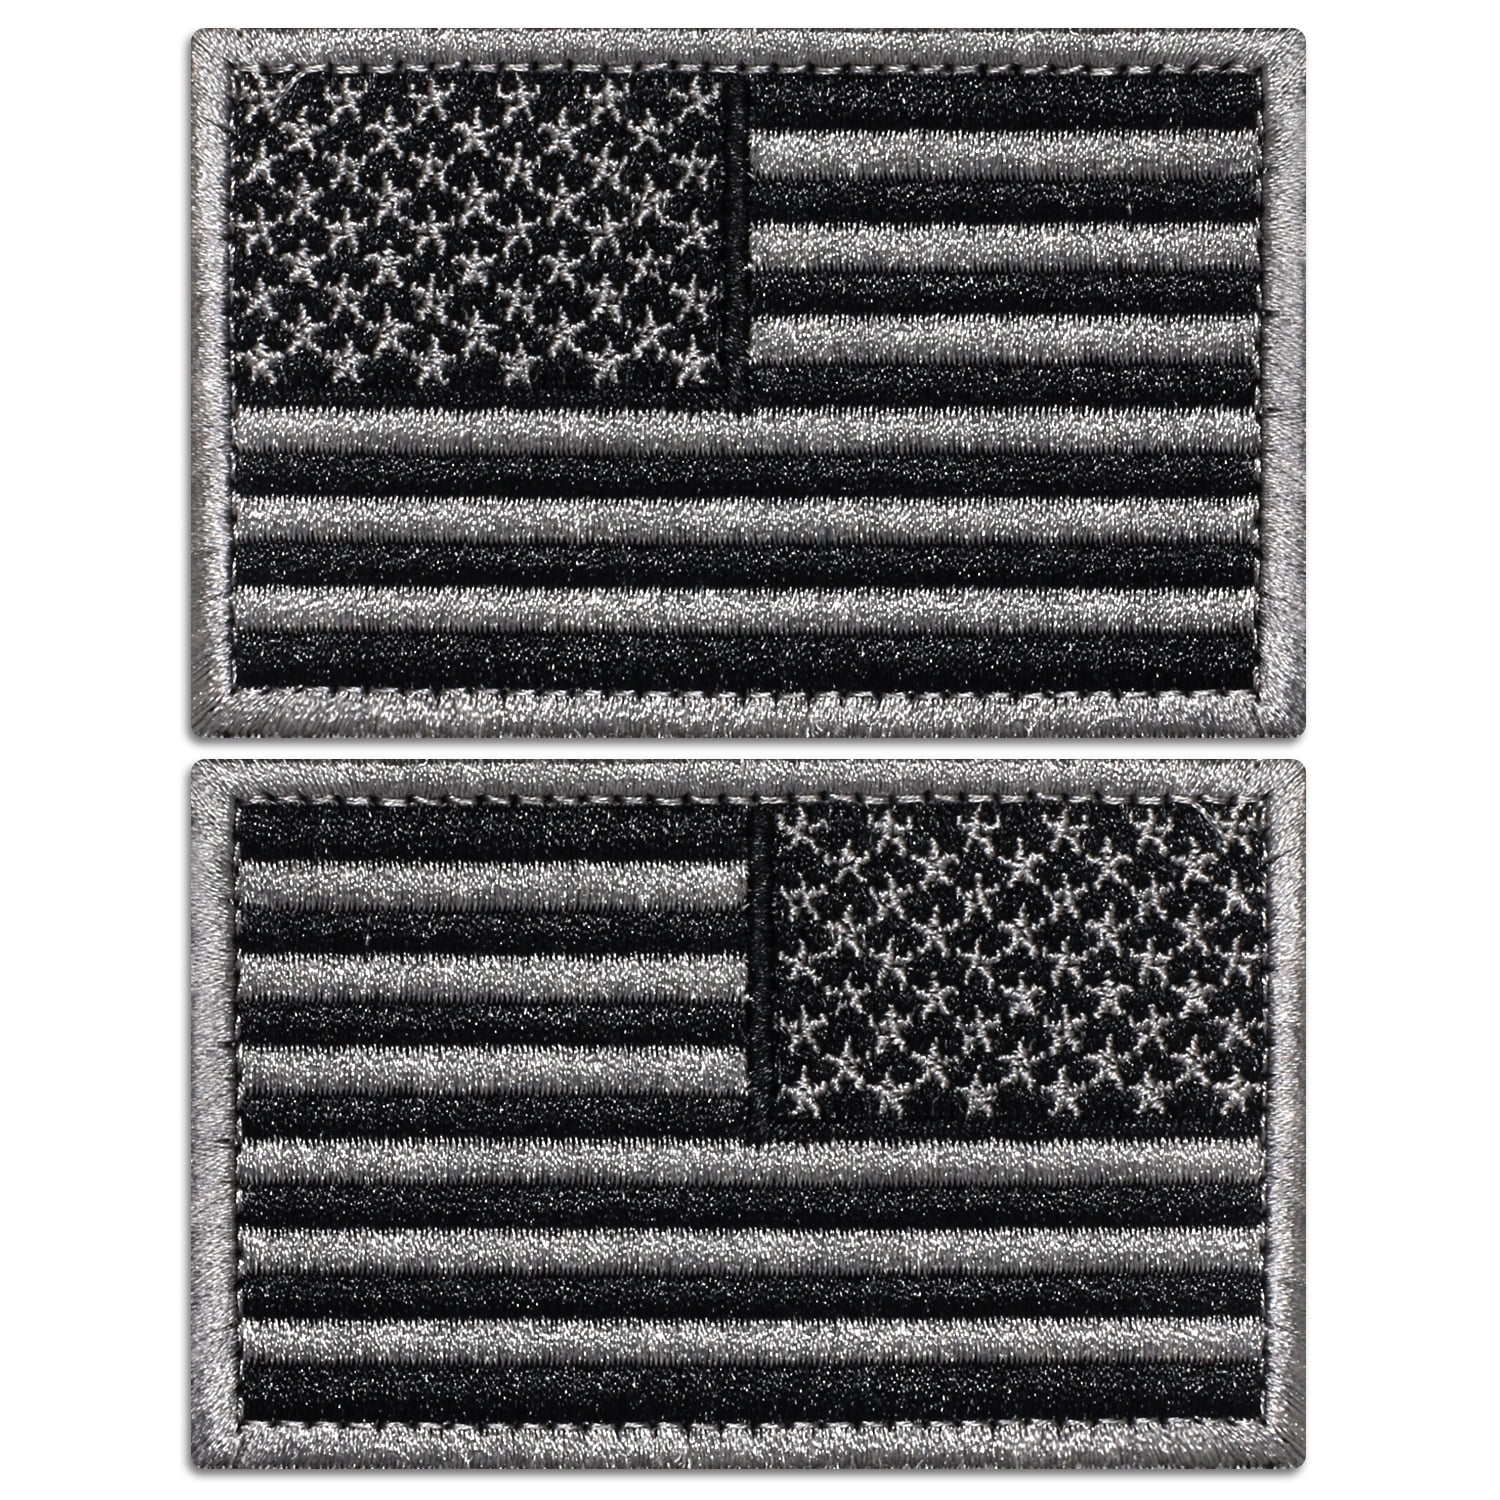 3.5 X 2.25 USA FLAG BLACK & WHITE PATCH - BLACK BORDER – San Diego Leather